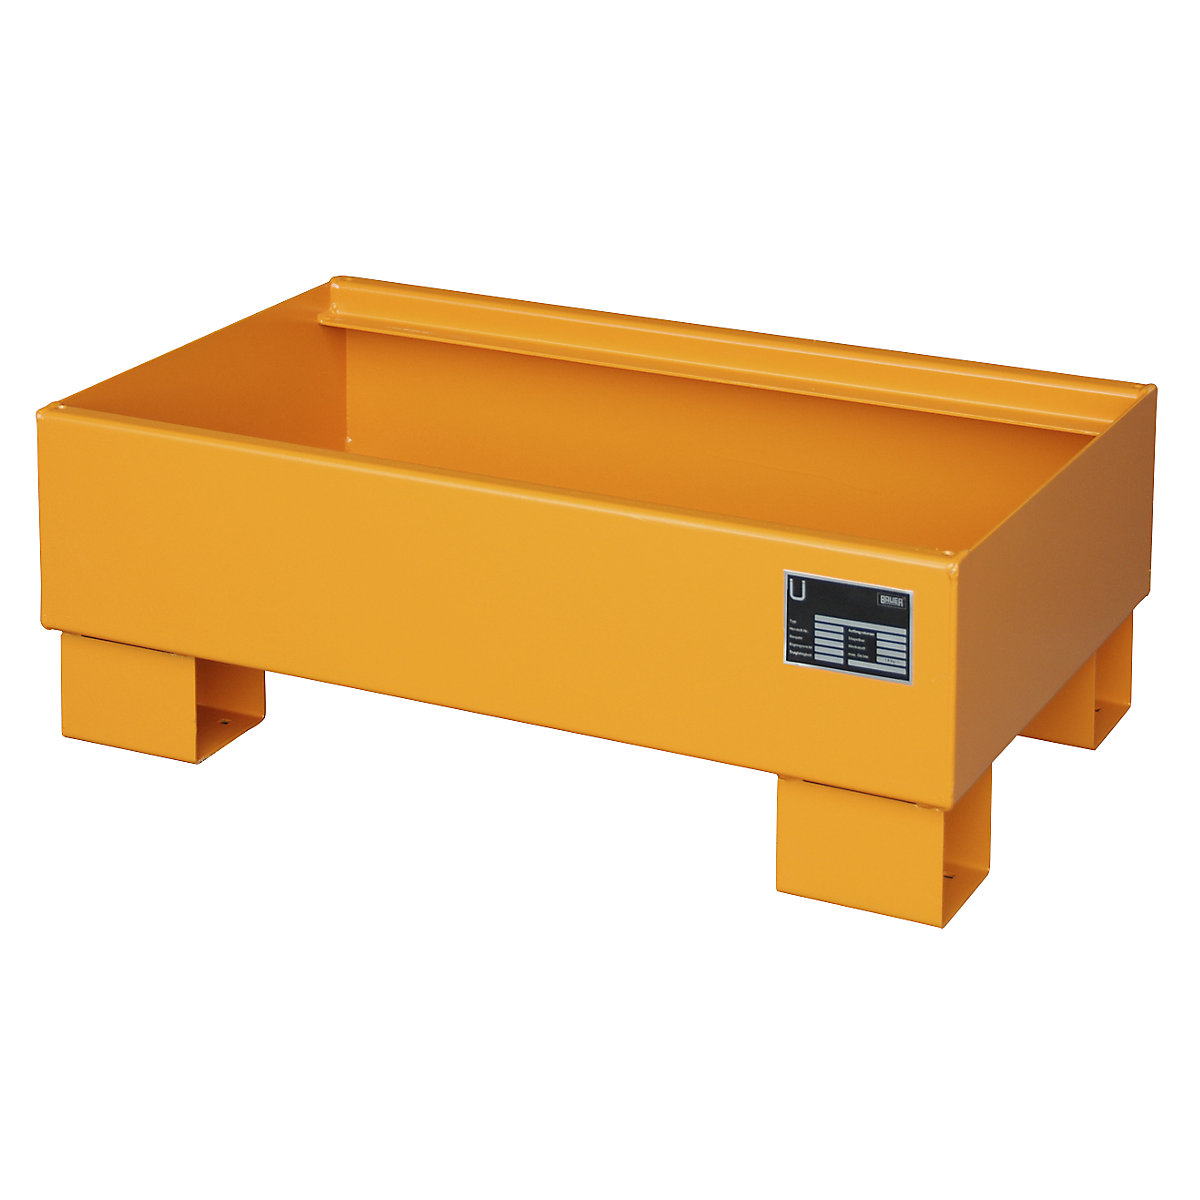 EUROKRAFTpro Stahl-Auffangwanne für 60-l-Fass, LxBxH 800 x 500 x 290 mm, lackiert orange RAL 2000, ohne Gitterrost